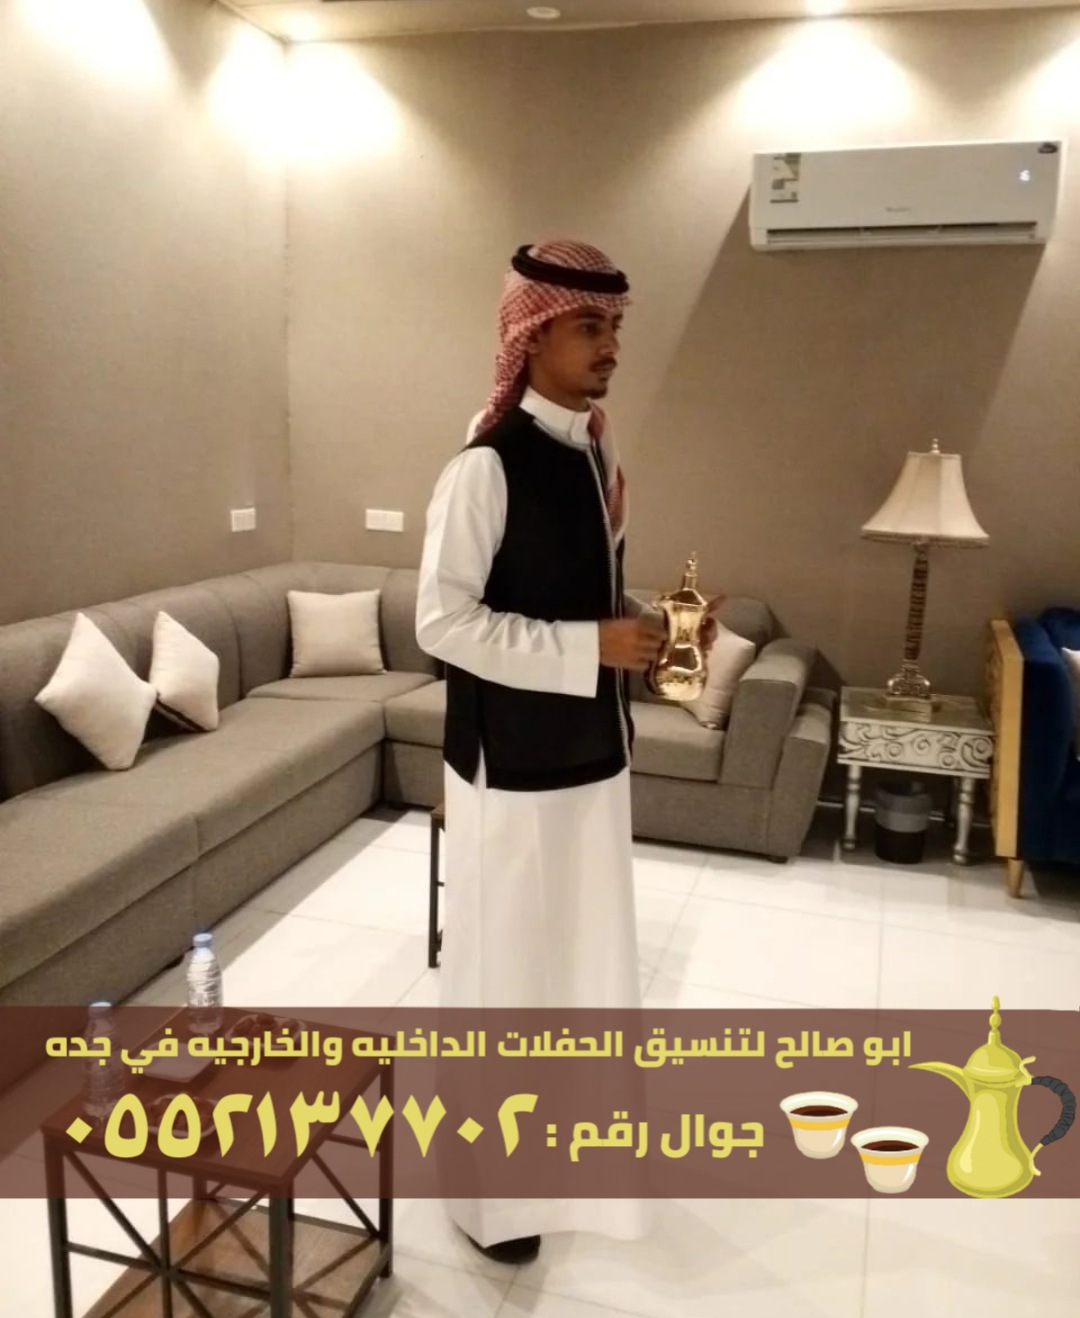 قهوجي و صبابين في جدة,0552137702 P_25892l6m03